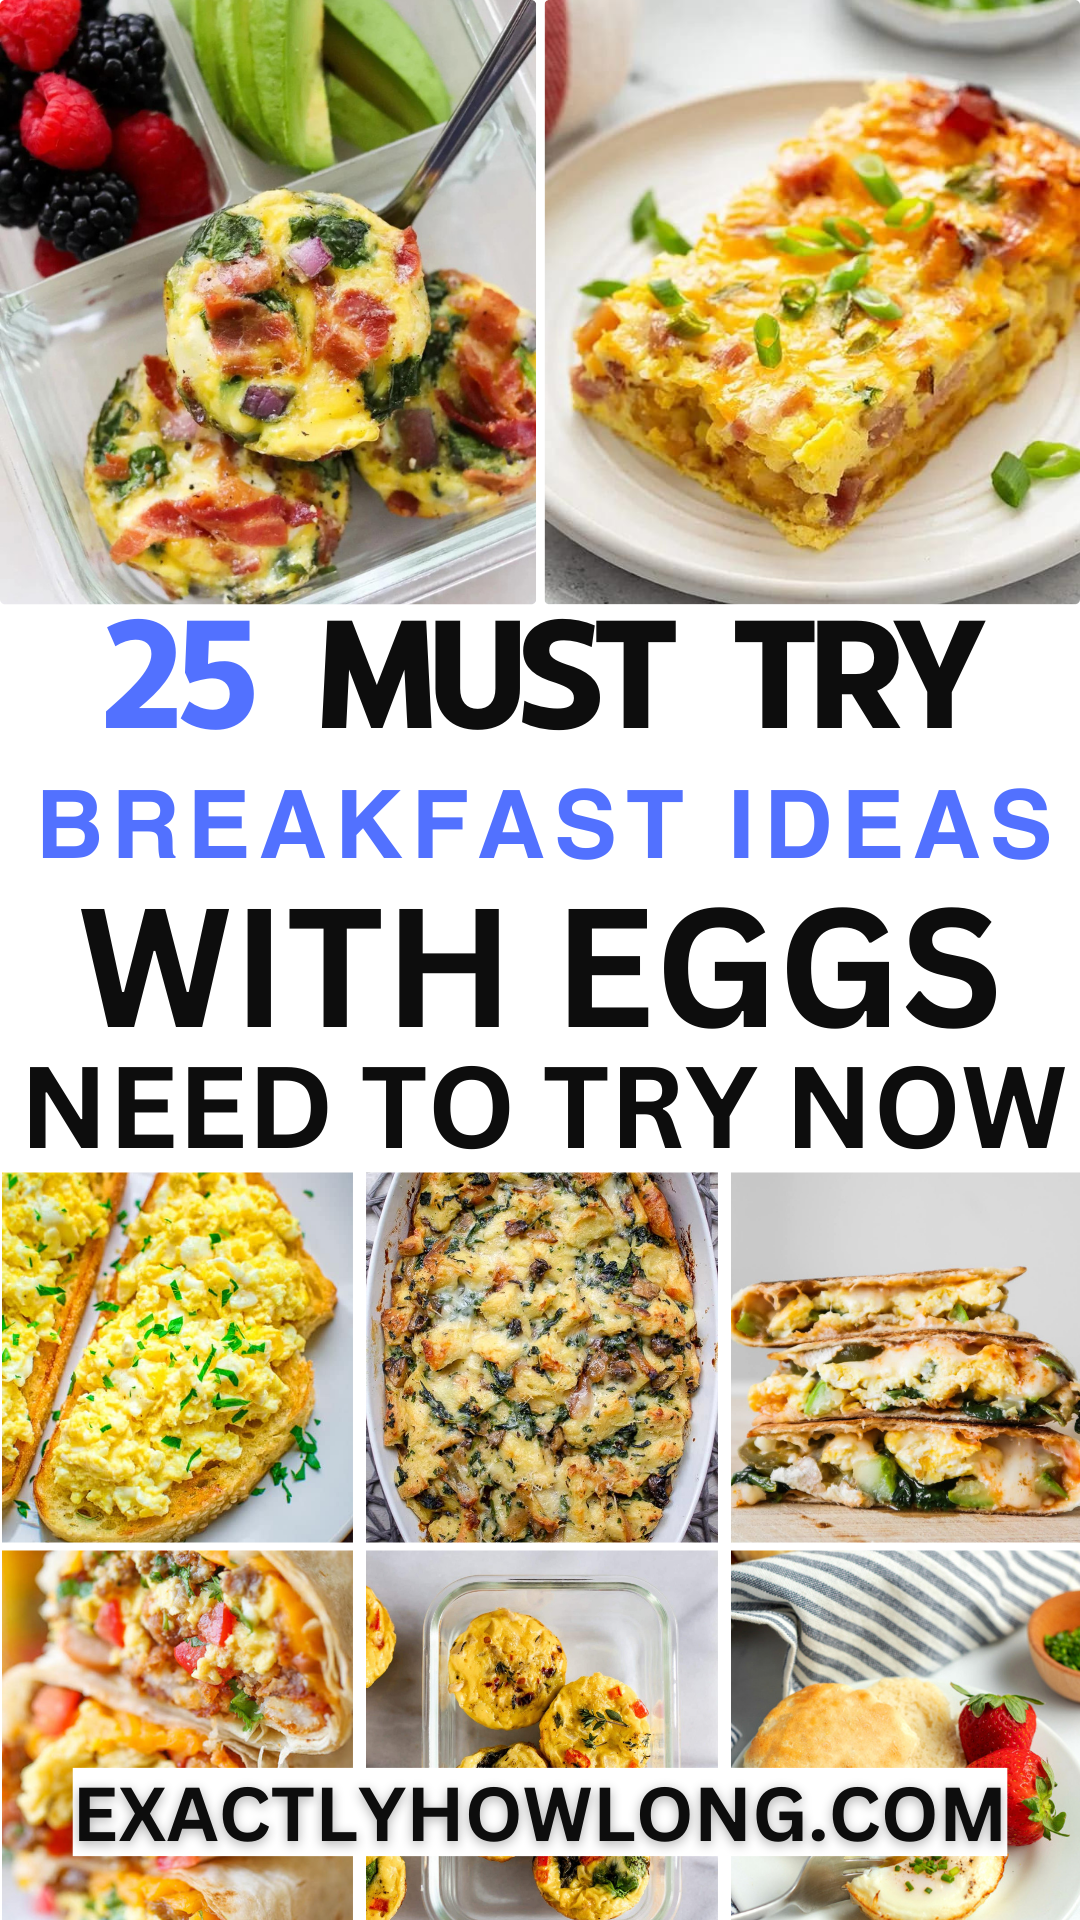 Idées de petit-déjeuner avec des œufs